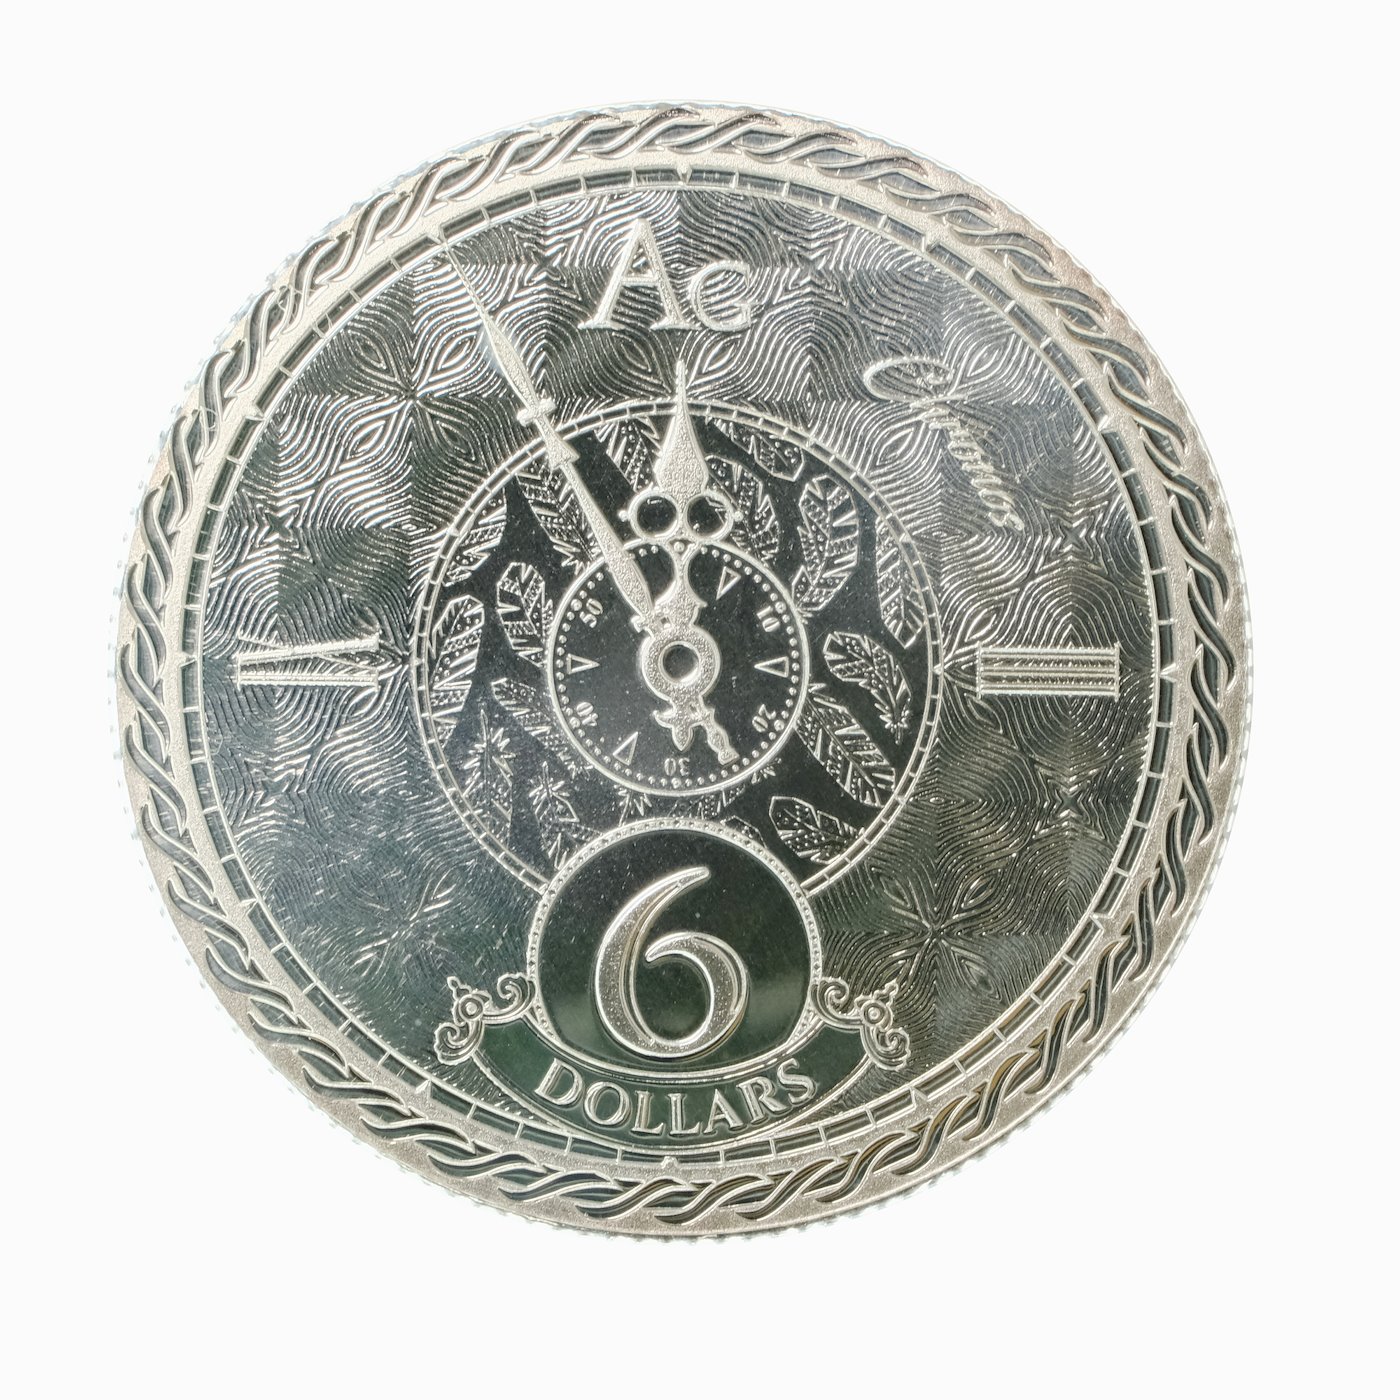 .. - Tokelau 2020 1 unce stříbrná mince CHRONOS Jing Jang, stříbro 999/1000, hrubá hmotnost 31,1 g